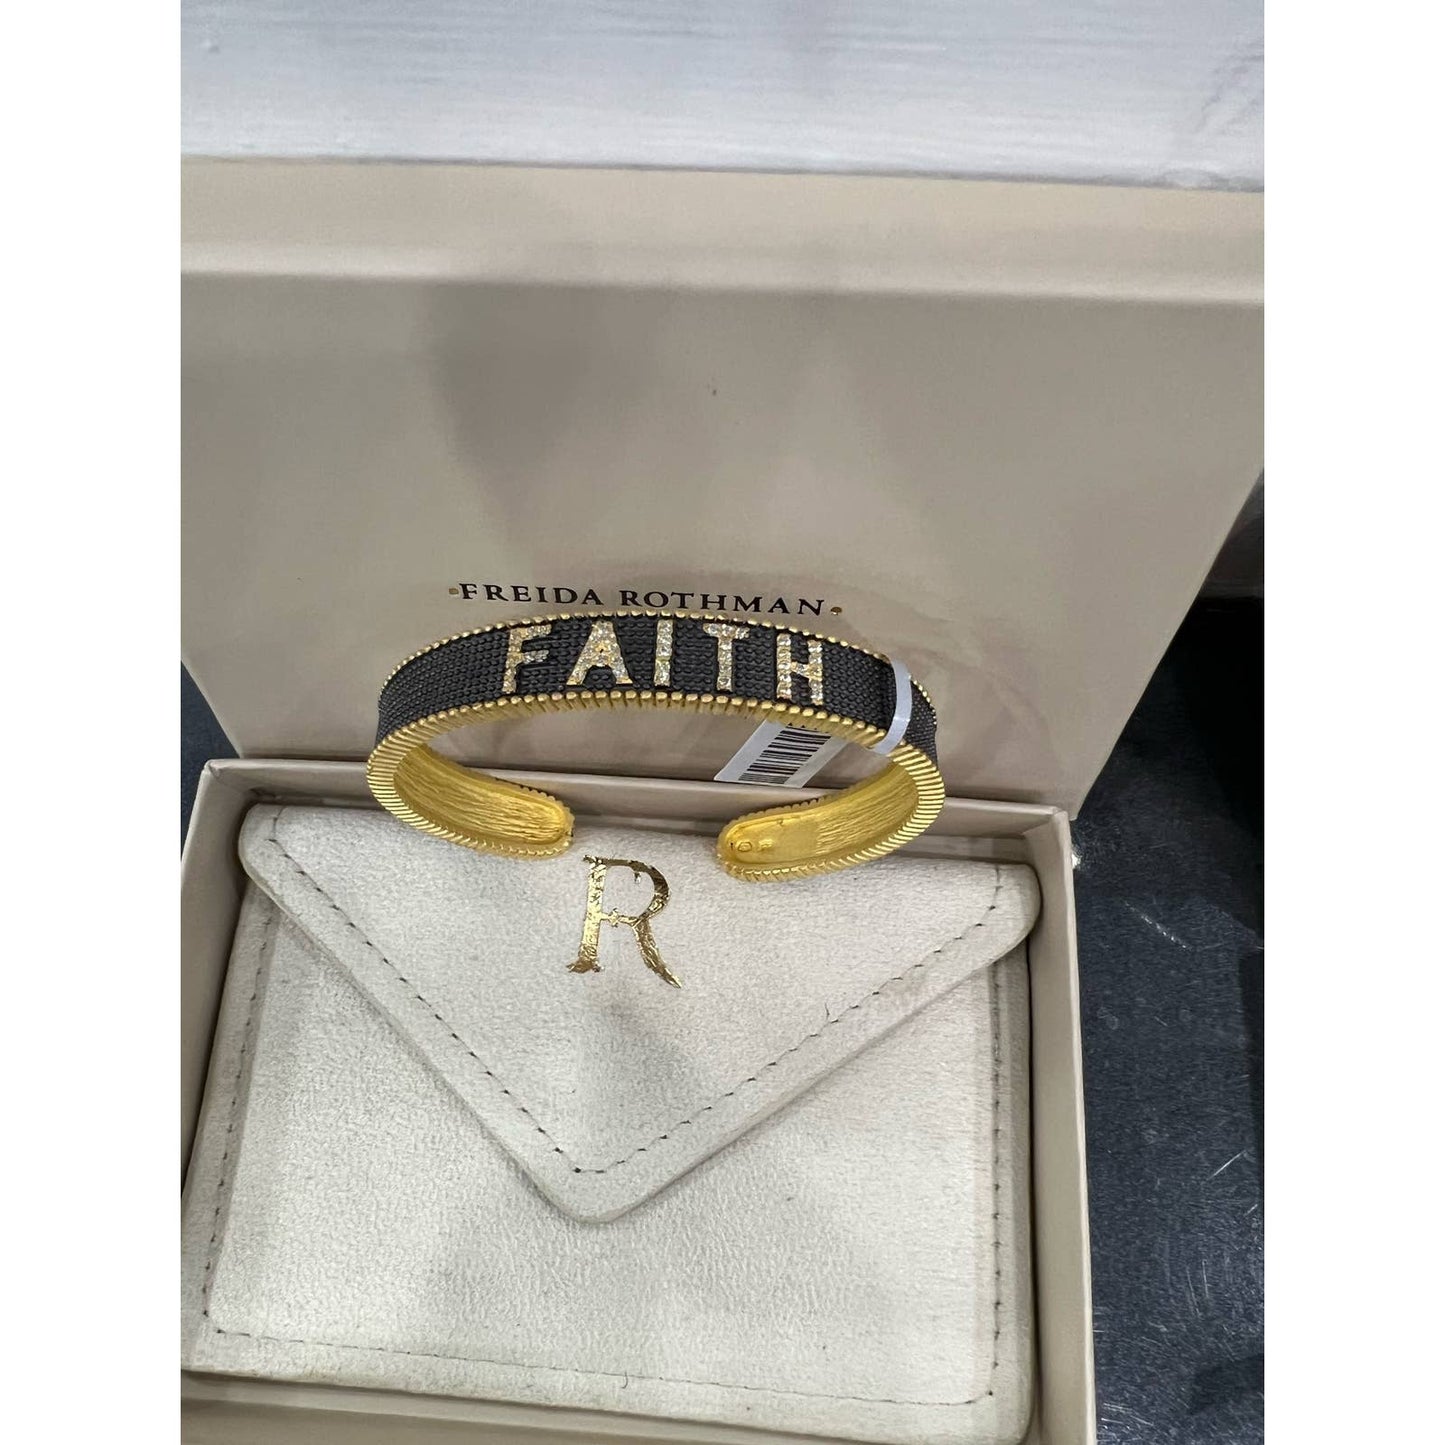 Freida Rothman Faith Cuff Bracelet